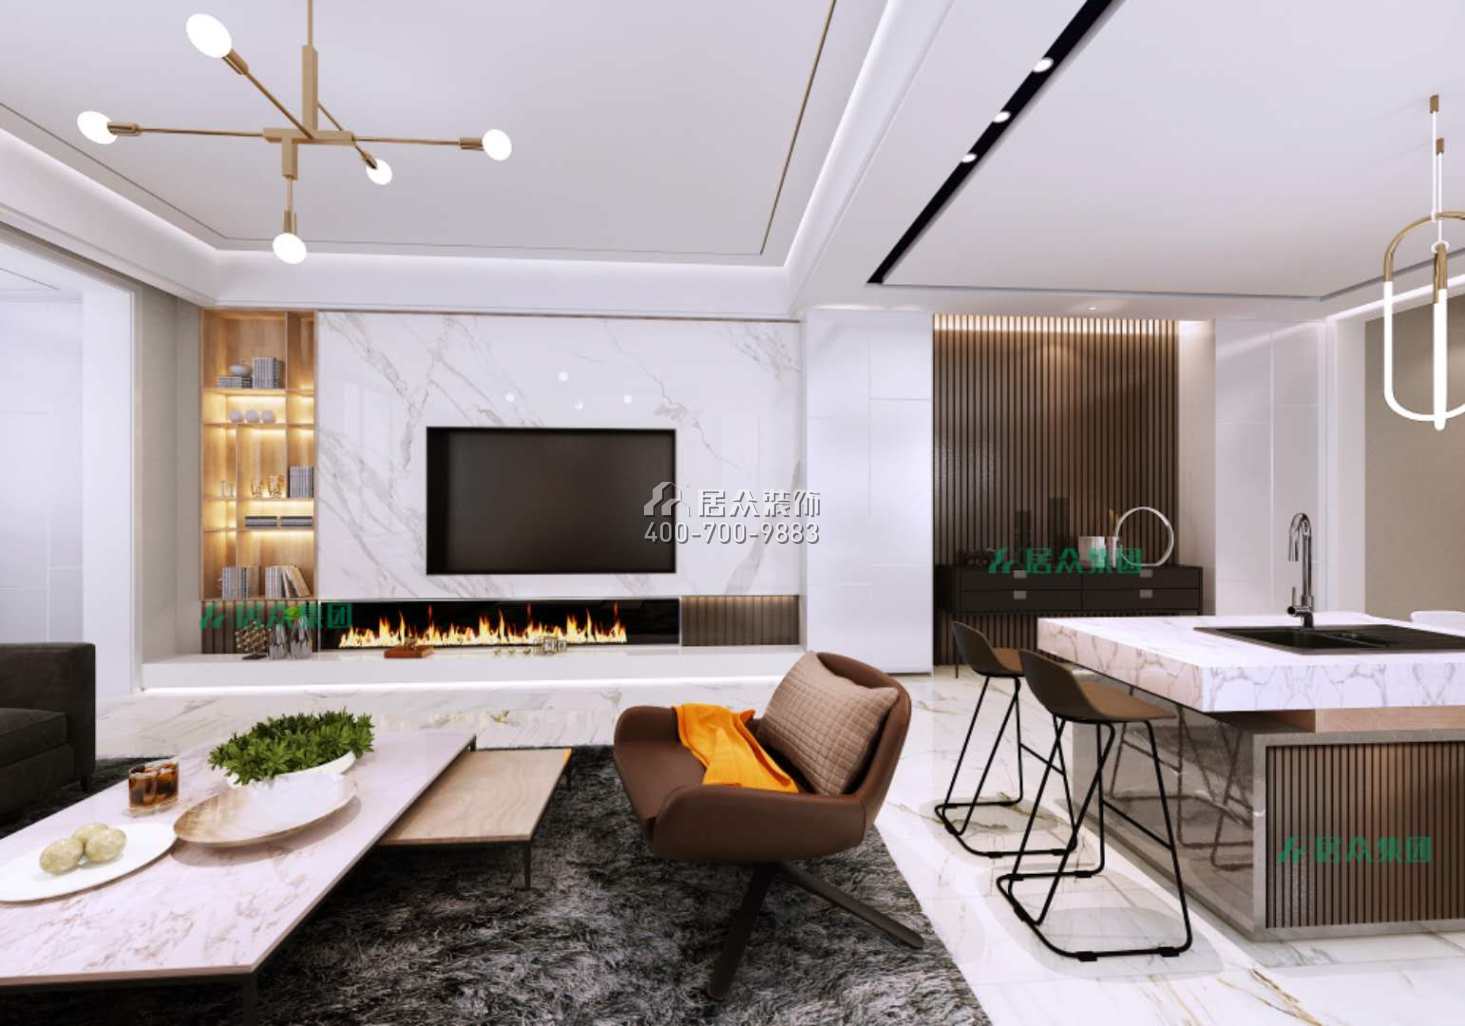 保利中央公园430平方米现代简约风格别墅户型客餐厅一体装修效果图